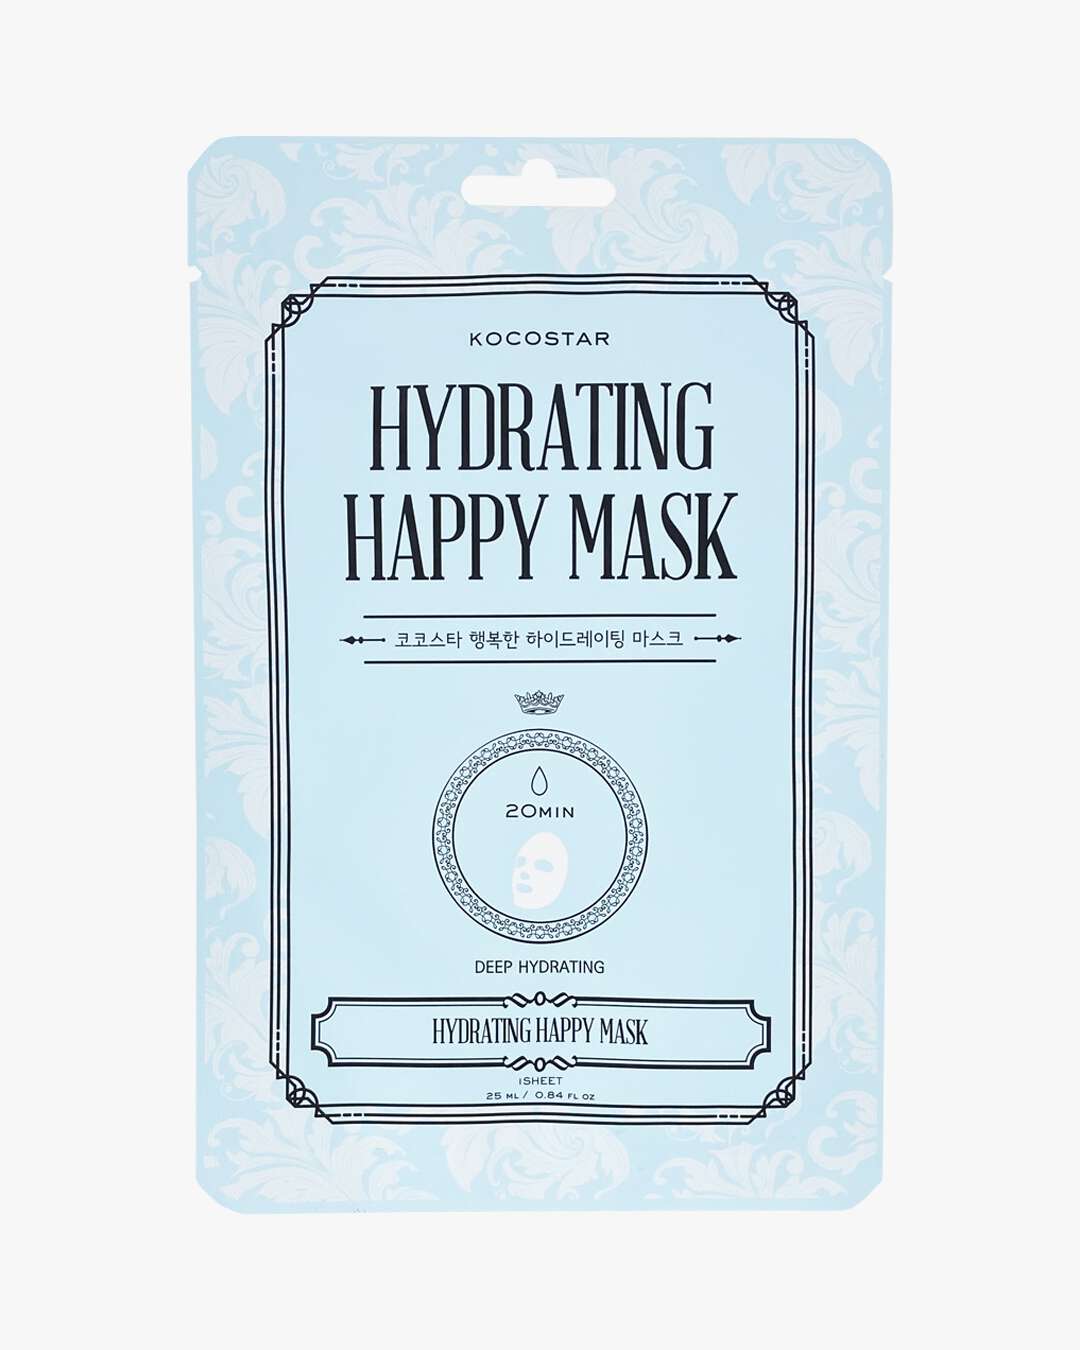 Hydrating Happy Mask 1 stk